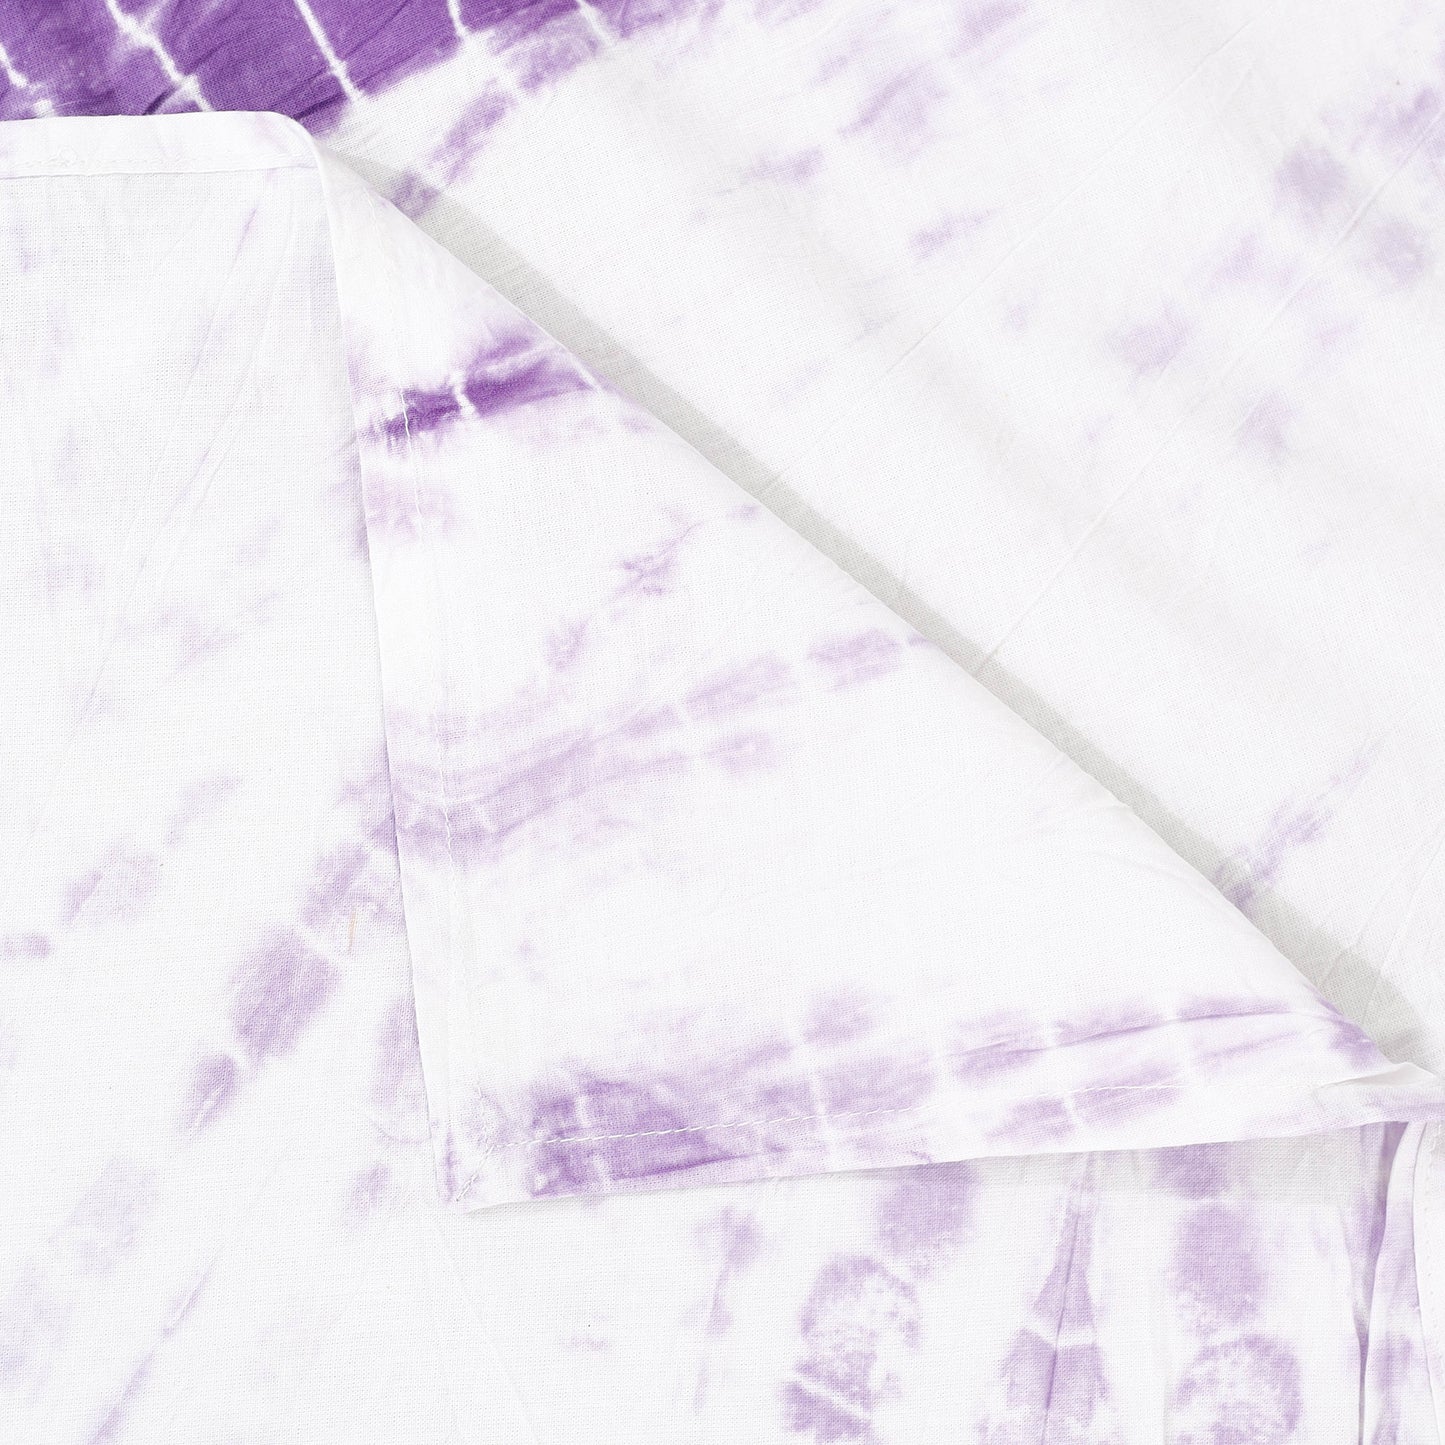 White - Shibori Tie-Dye Pure Cotton Single Bed Cover (90 x 60 in)